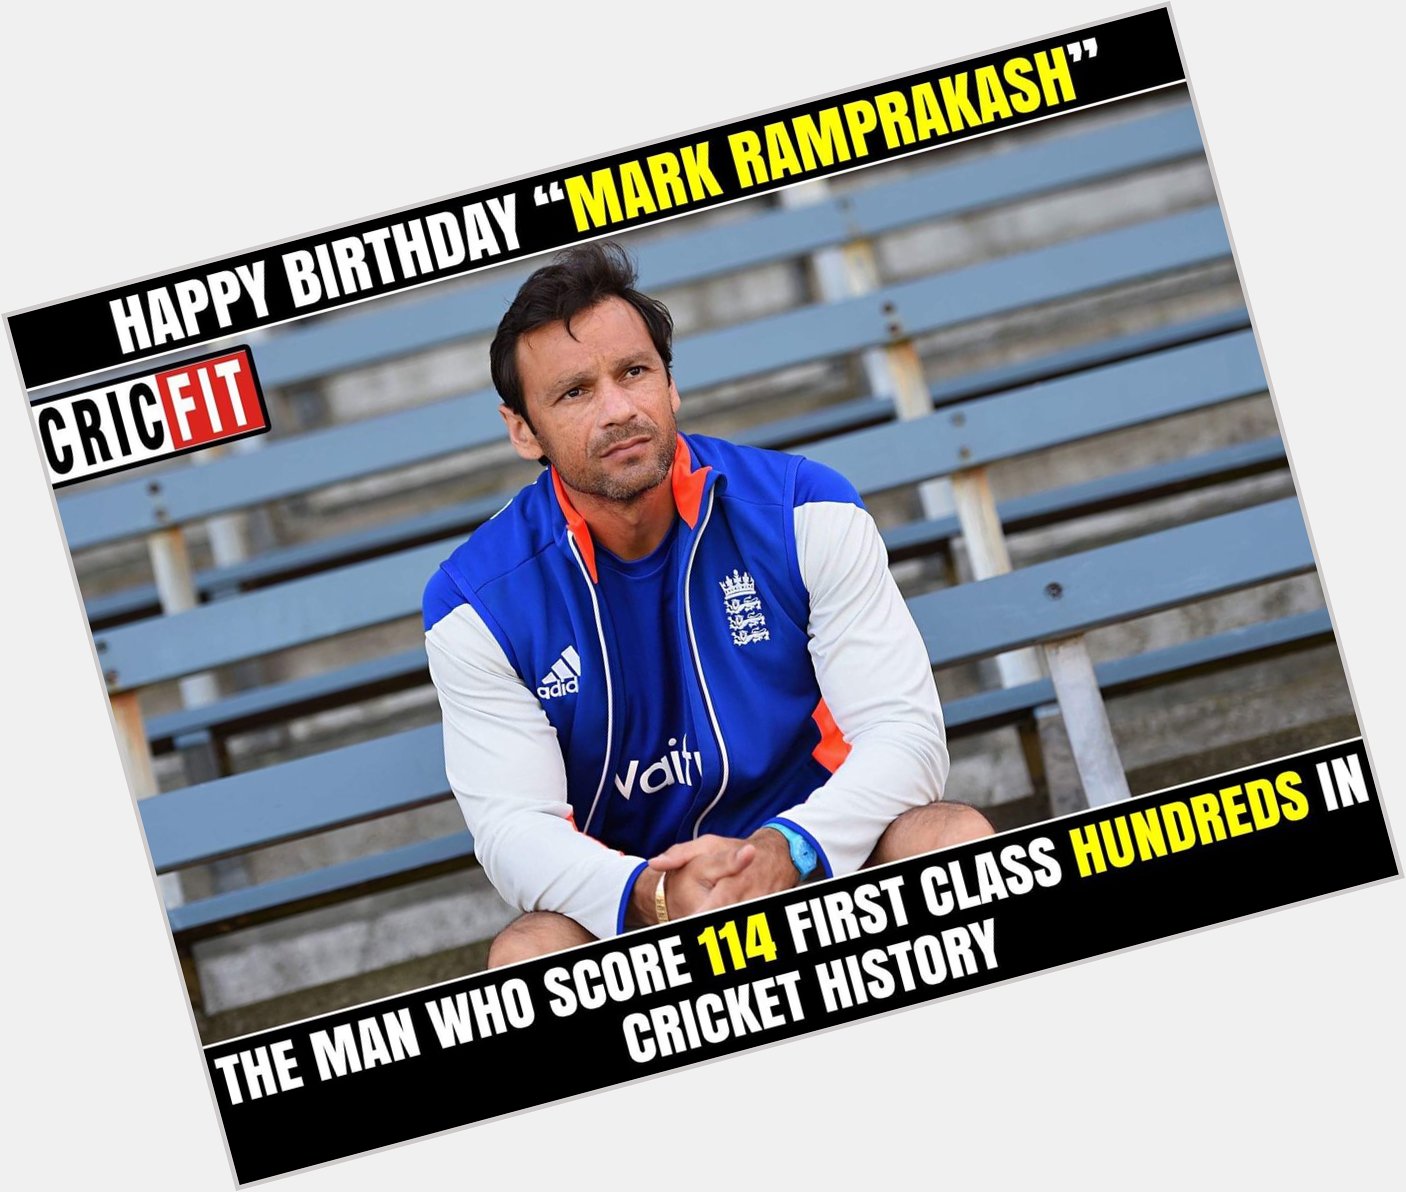 Happy Birthday Mark Ramprakash. 